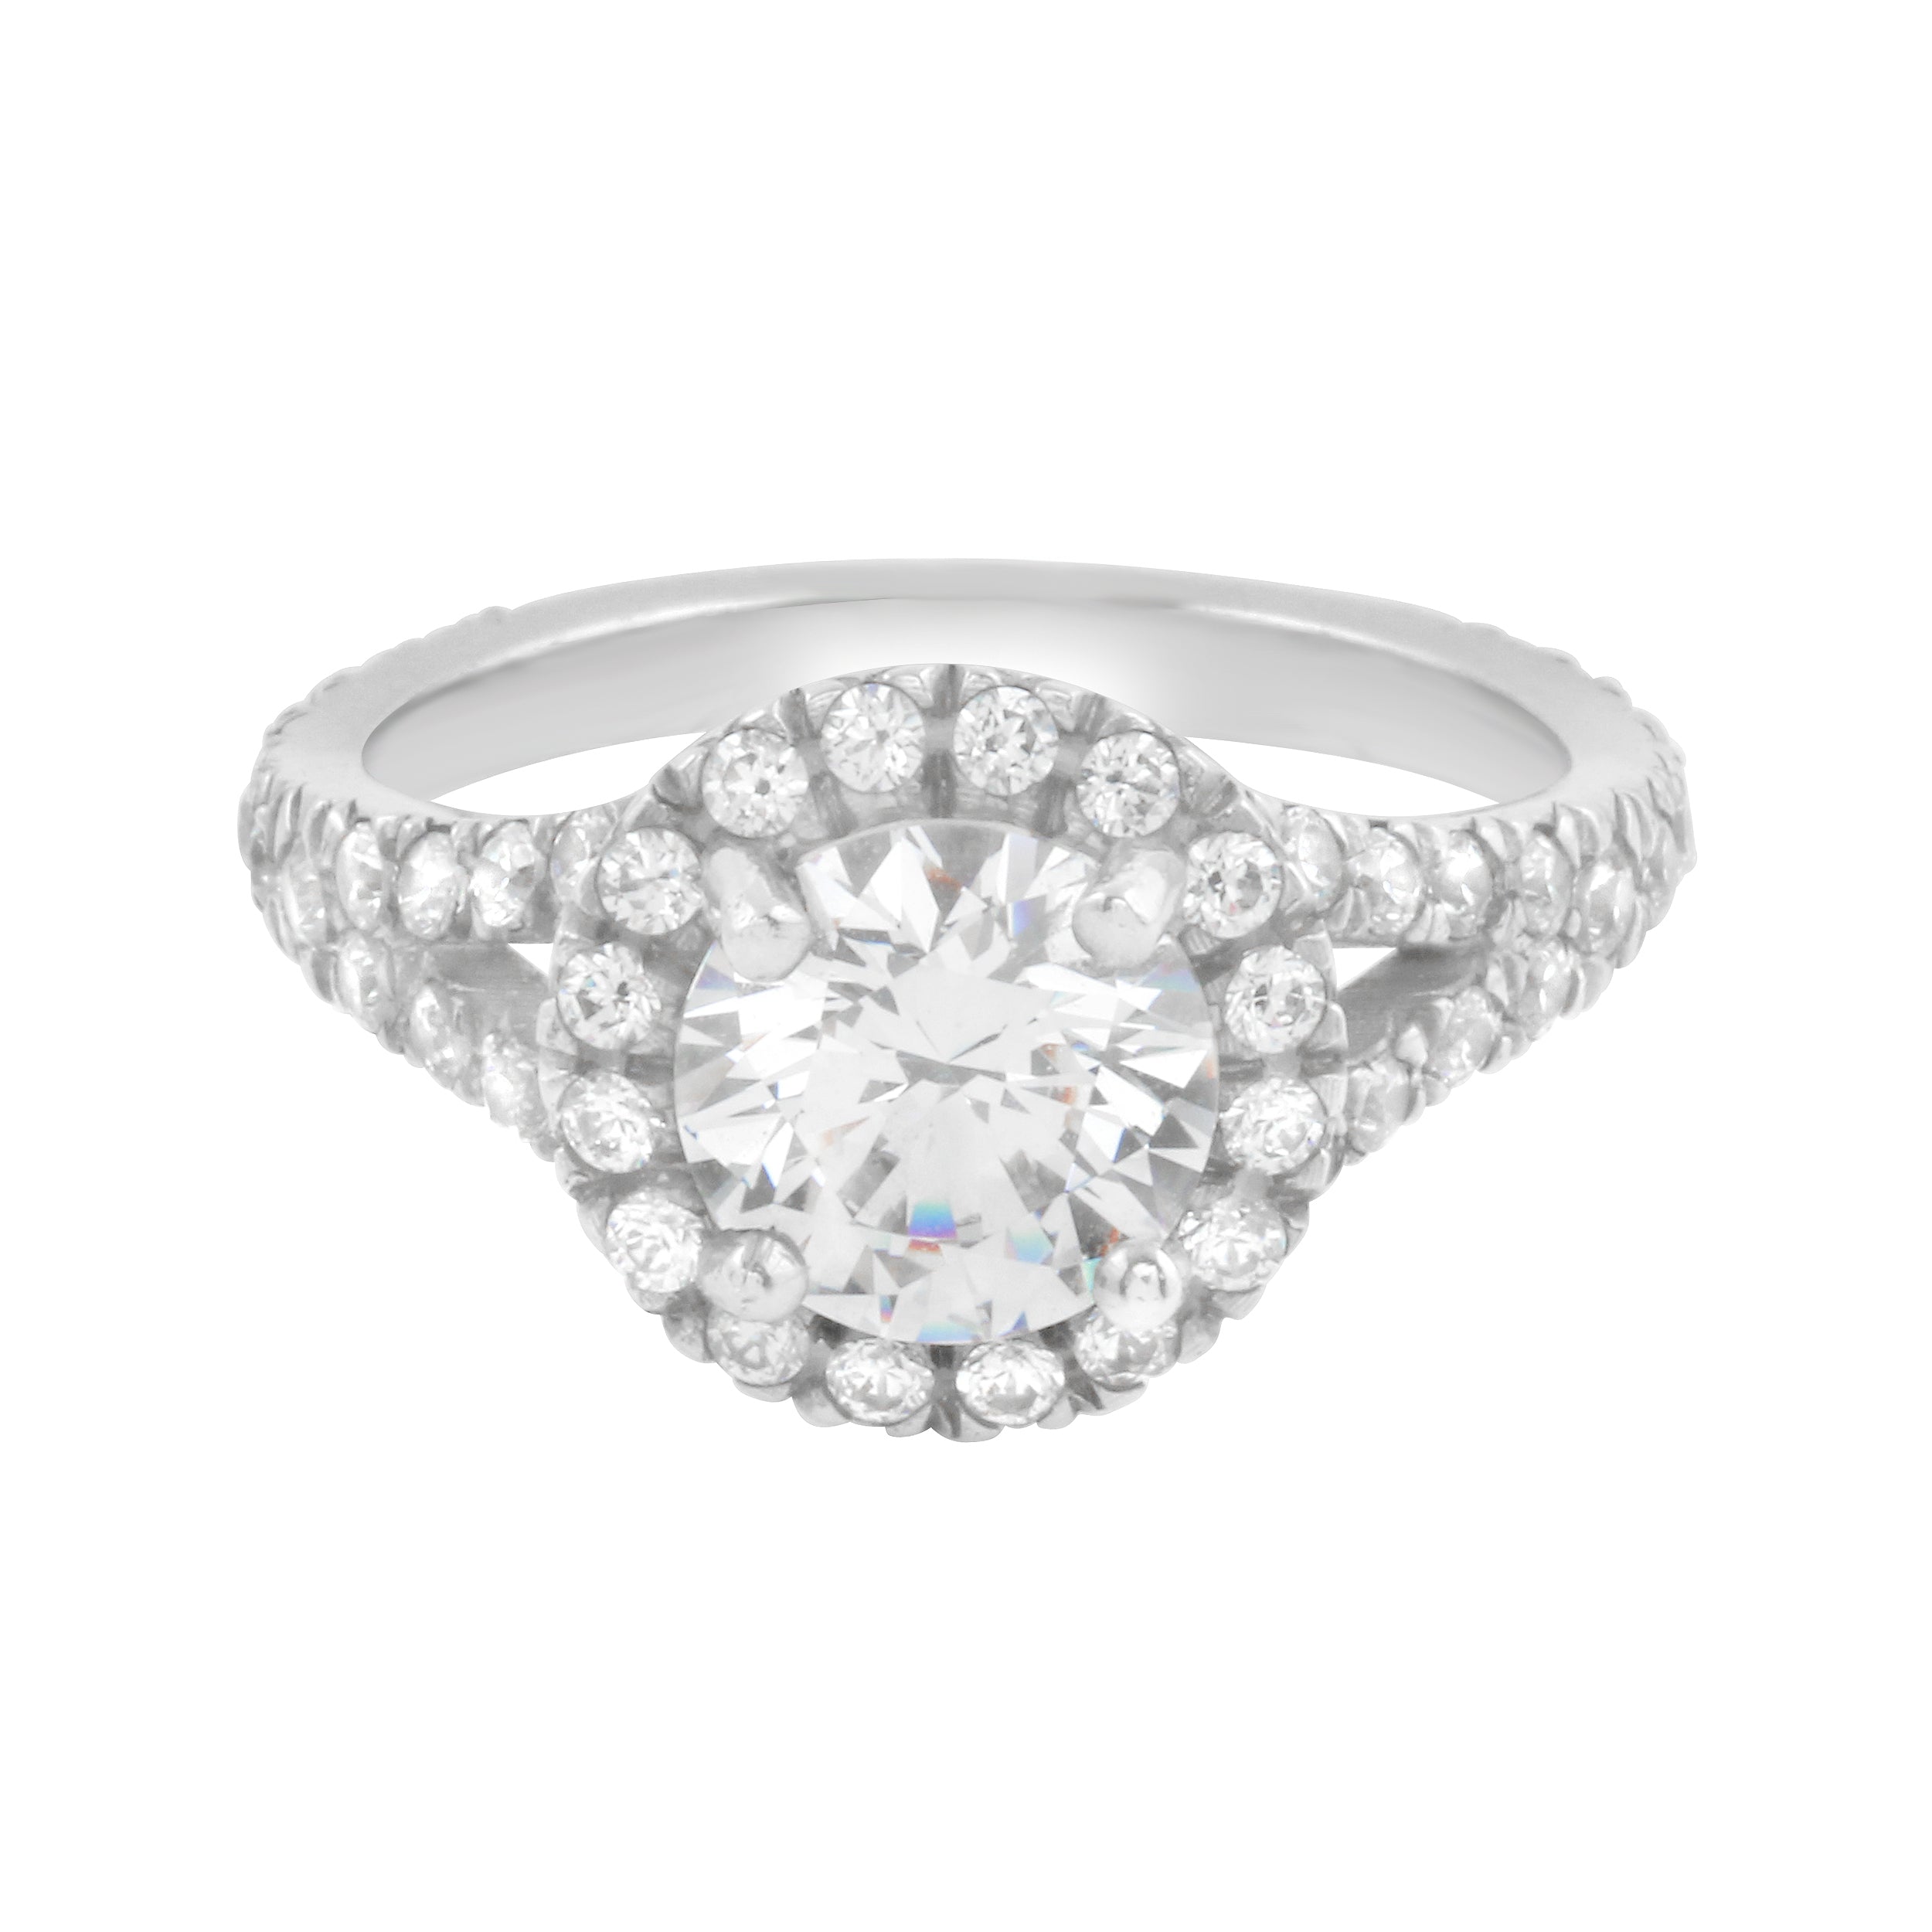 Round Diamond Halo Split Shank Engagement Ring-Engagement Ring-Ashley Schenkein Jewelry Design